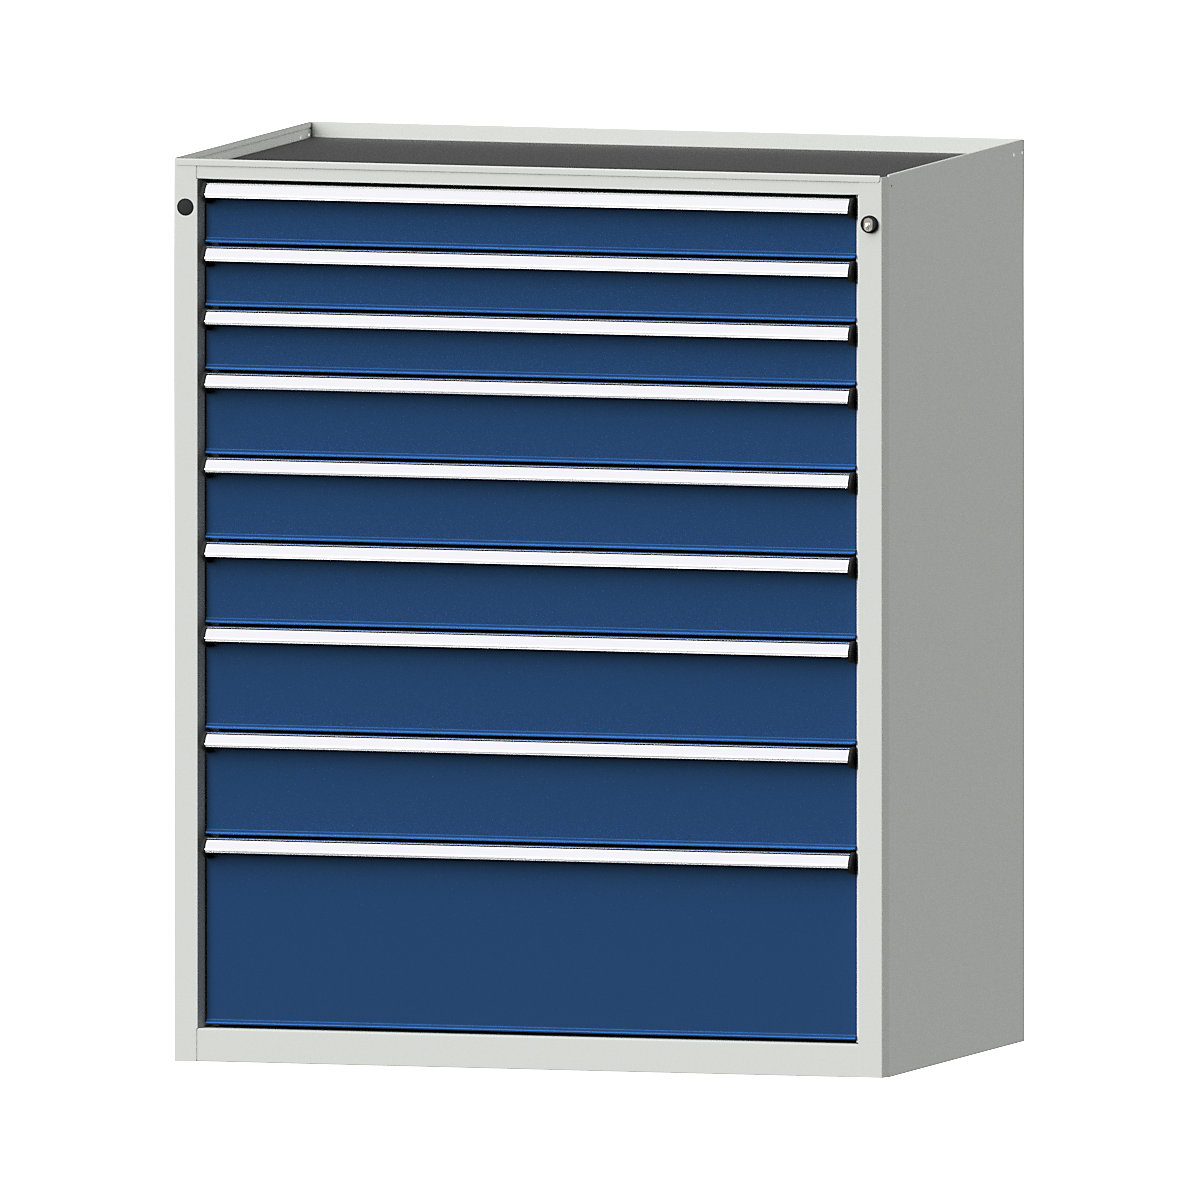 Szafa z szufladami – ANKE, szer. x głęb. 1060 x 675 mm, nośność szuflady 200 kg, 9 szuflad, wys. 1280 mm, front niebieski gencjanowy-7